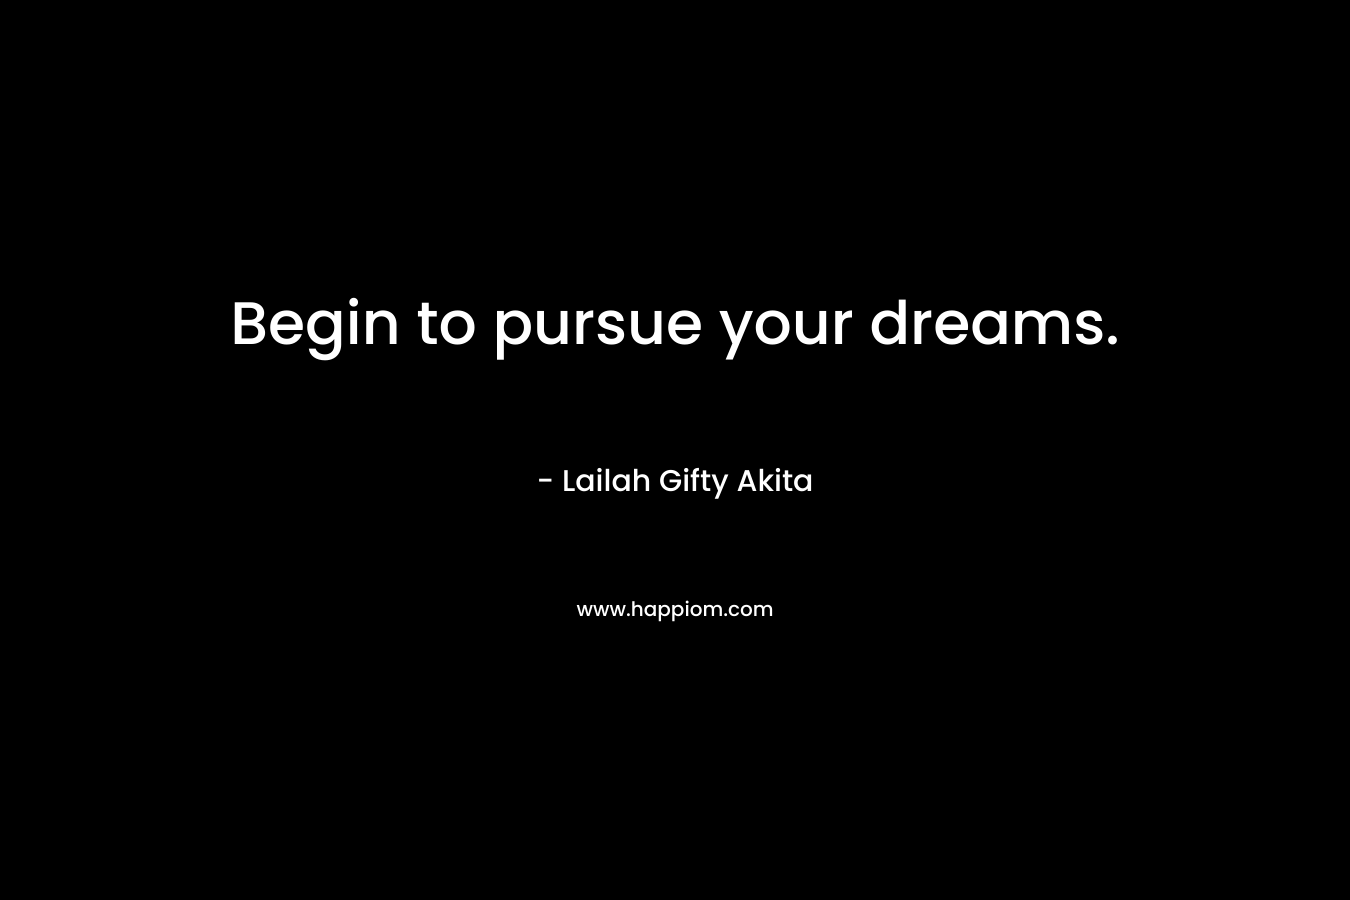 Begin to pursue your dreams.